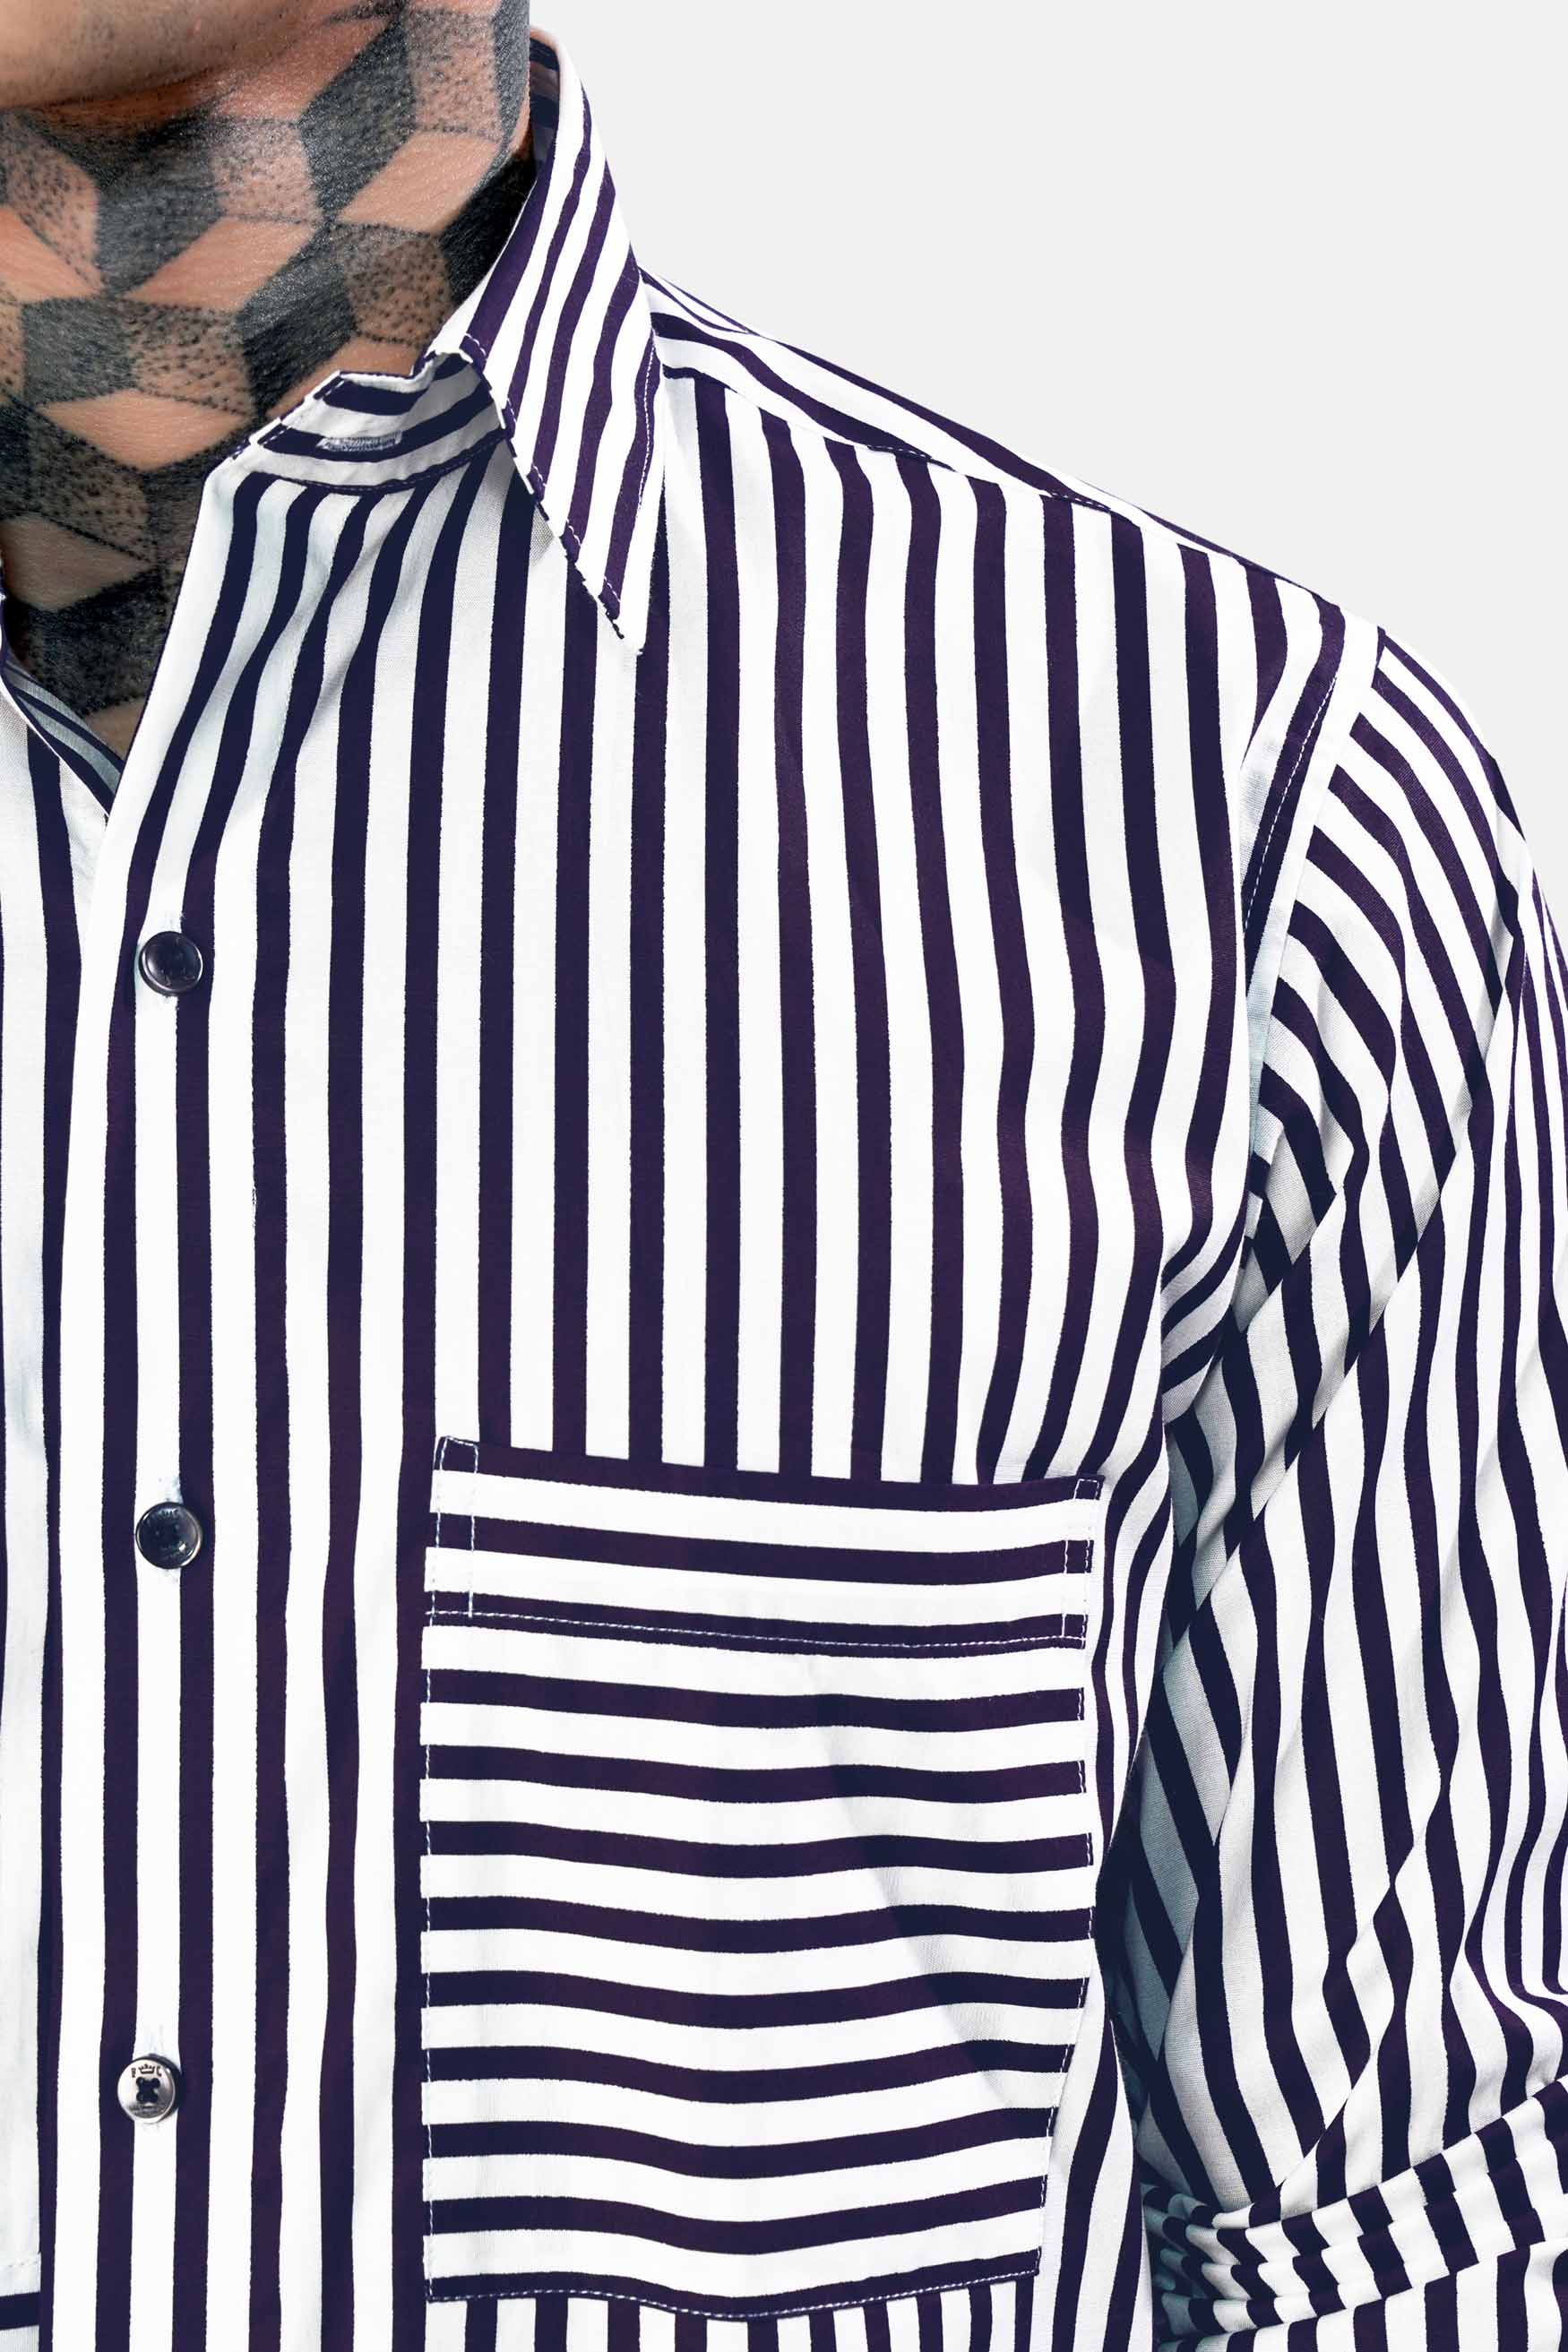 Bright White and Haiti Blue Striped Premium Cotton Designer Shirt